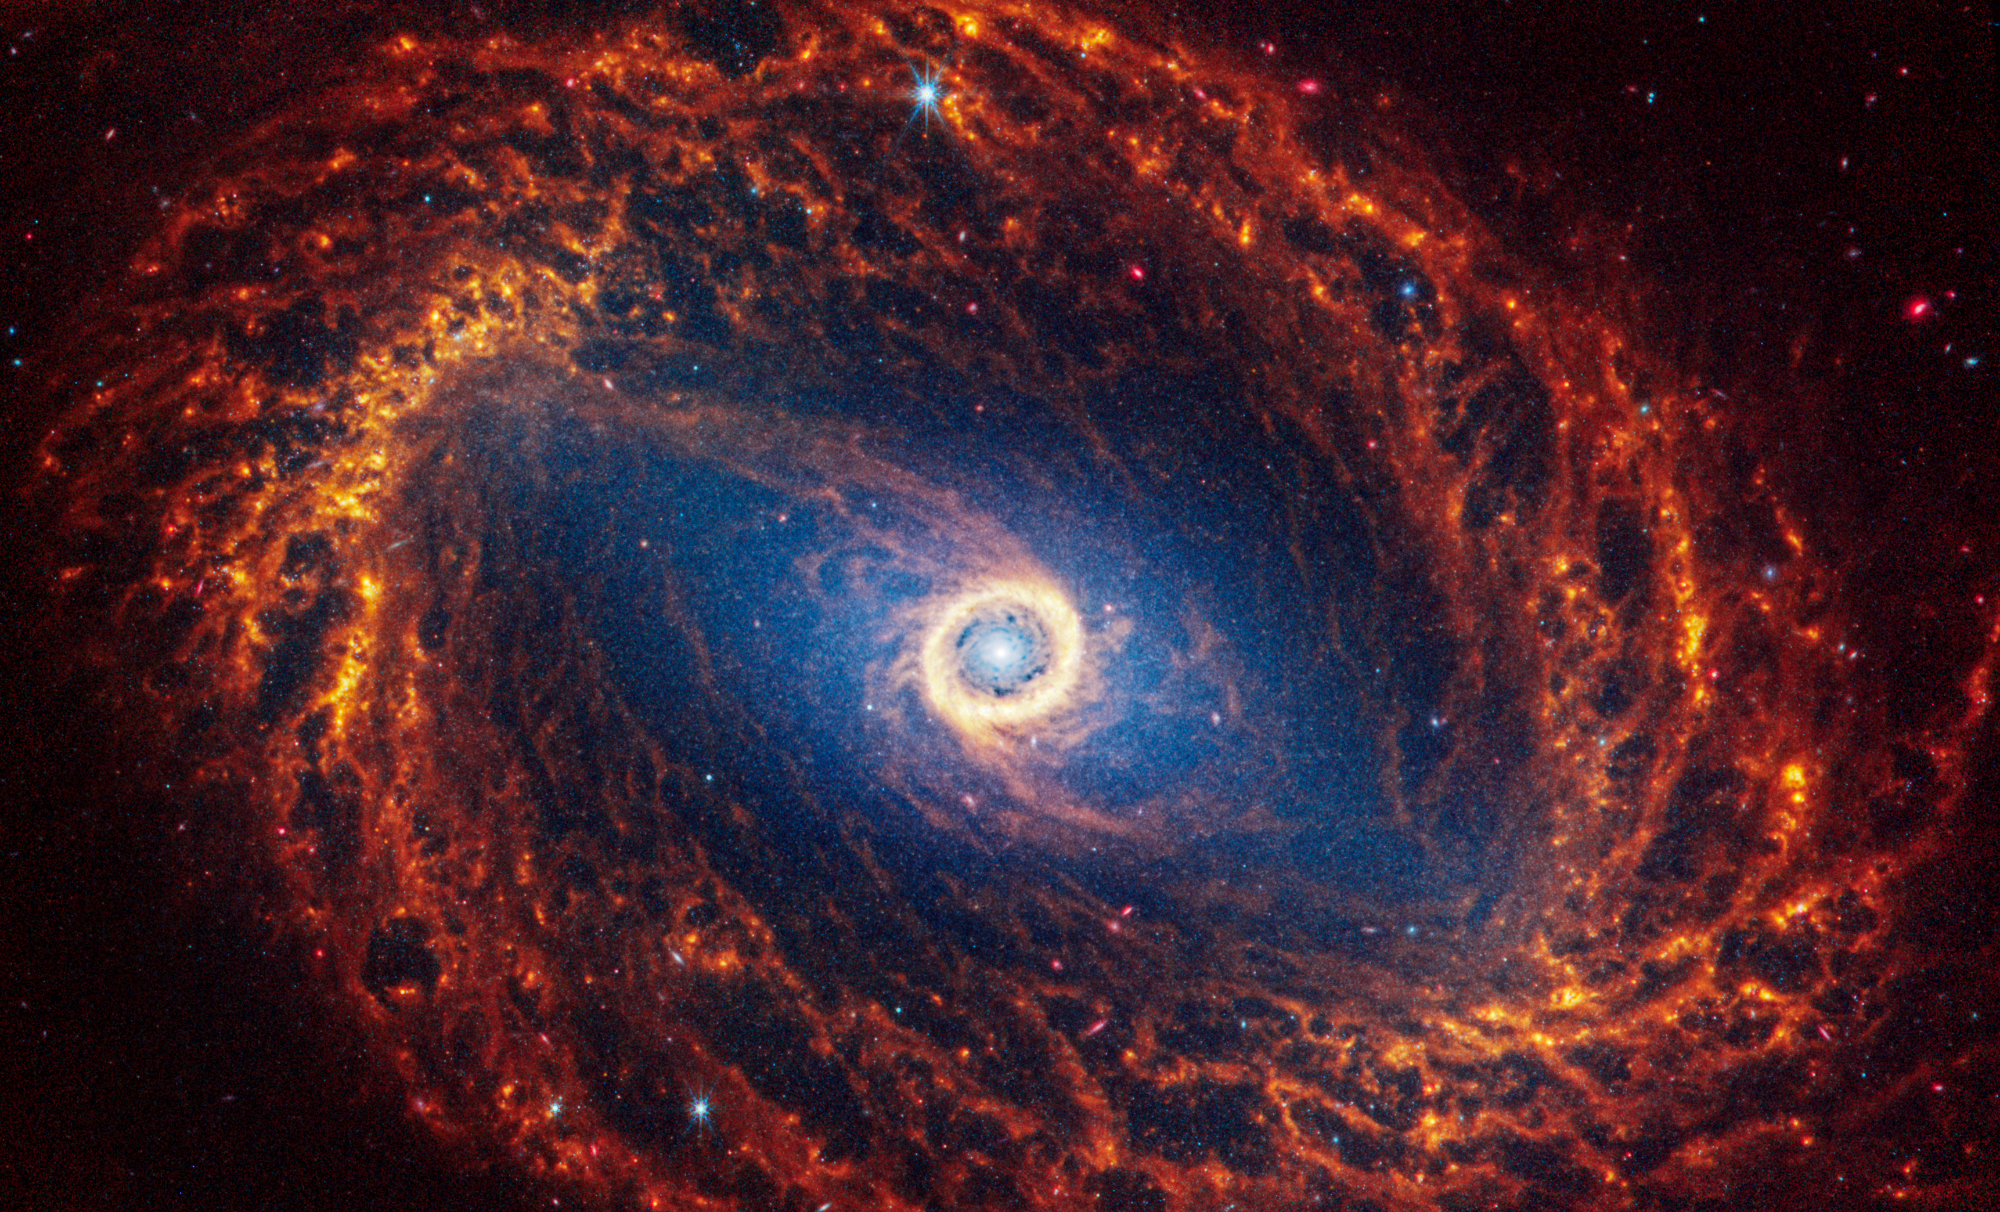 La galaxia espiral NGC 1512, localizada a 30 millones de años luz en la constelación de Horologium (El Reloj), exhibe su imponente estructura y detalles intrincados en sus brazos espirales.